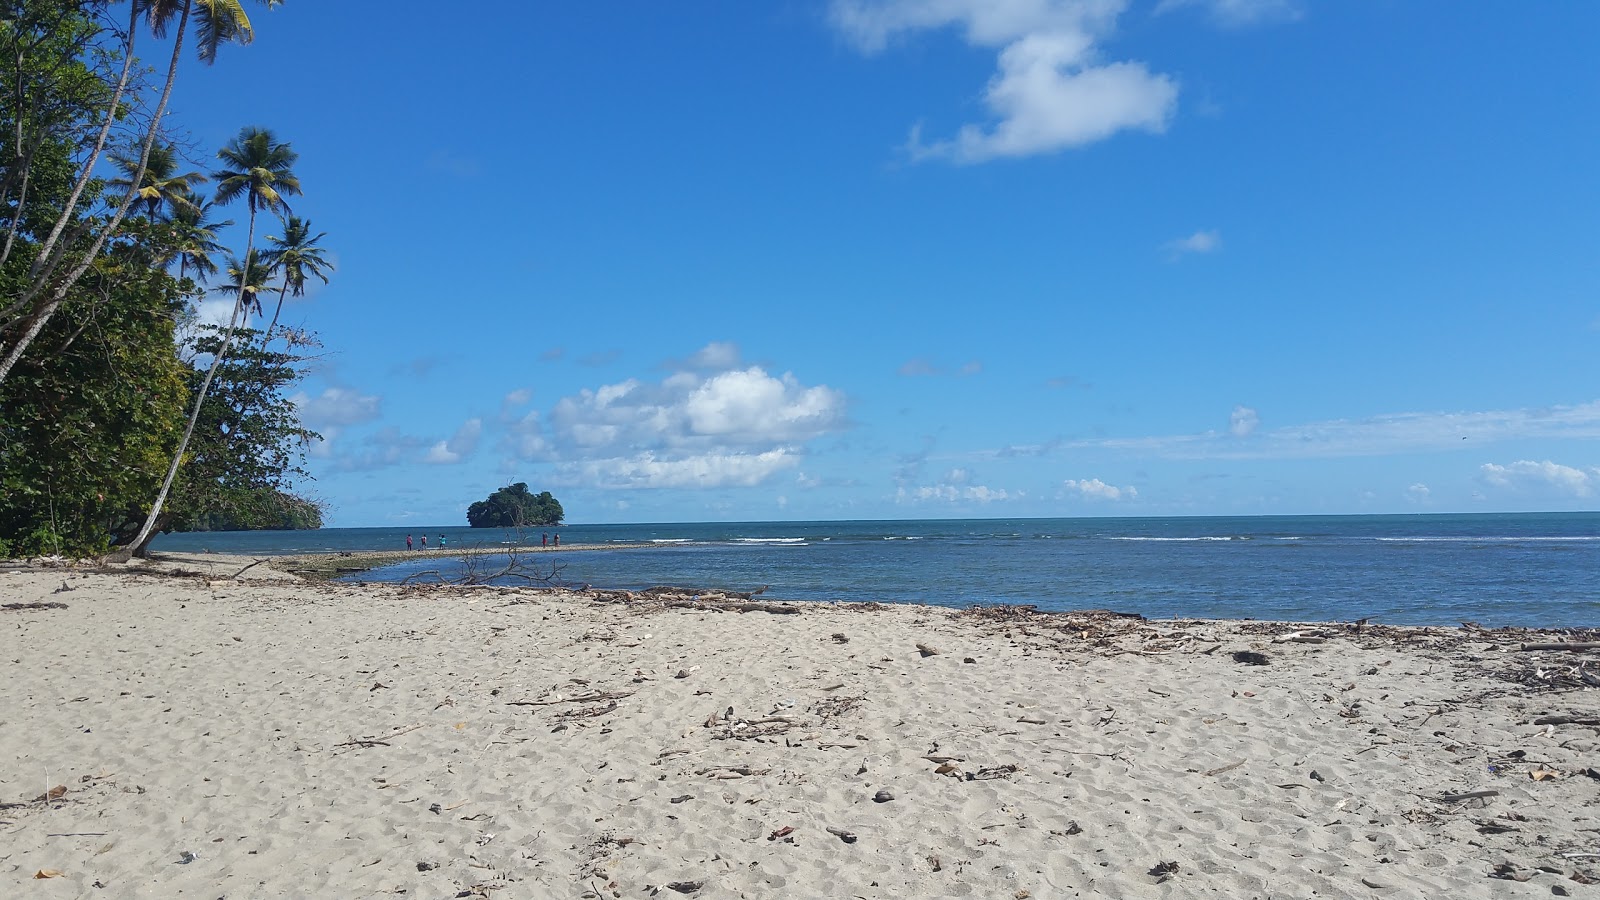 Fotografie cu Salybia beach cu o suprafață de nisip strălucitor